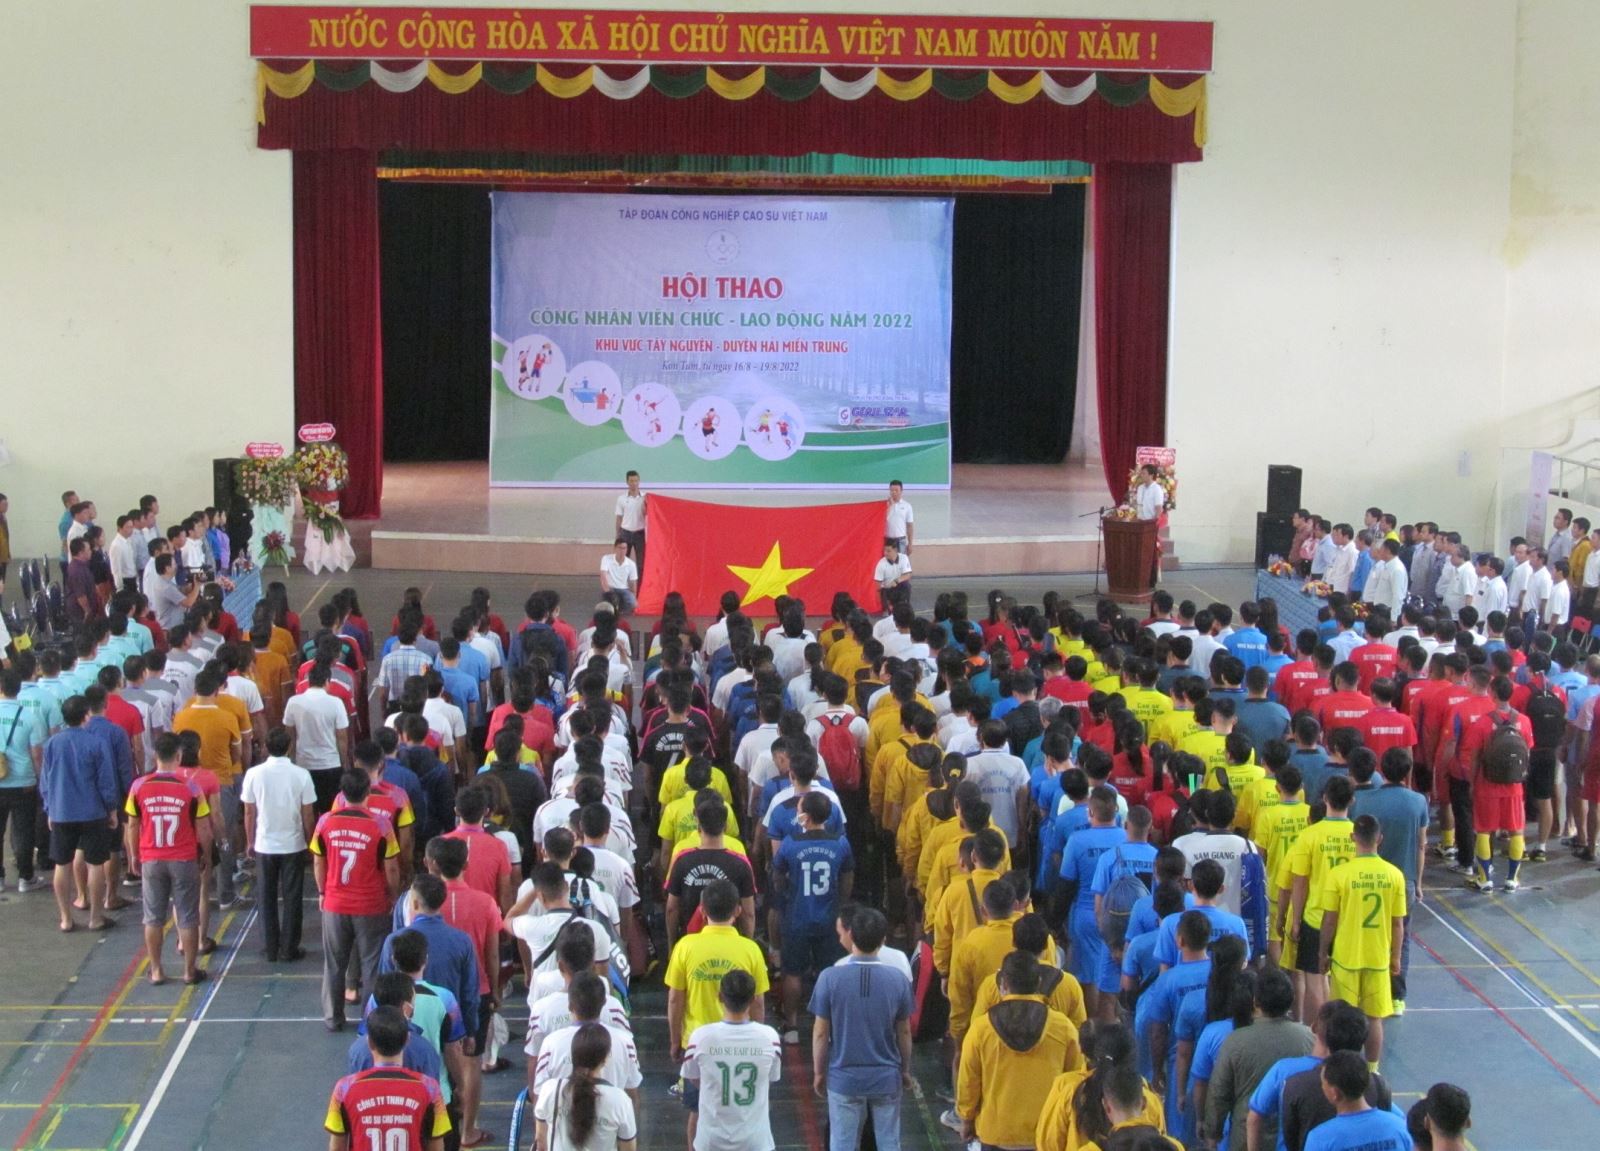 Hội thao Công nhân viên chức lao động ngành Cao Su Việt Nam khu vực Tây Nguyên – Duyên hải Miền trung năm 2022